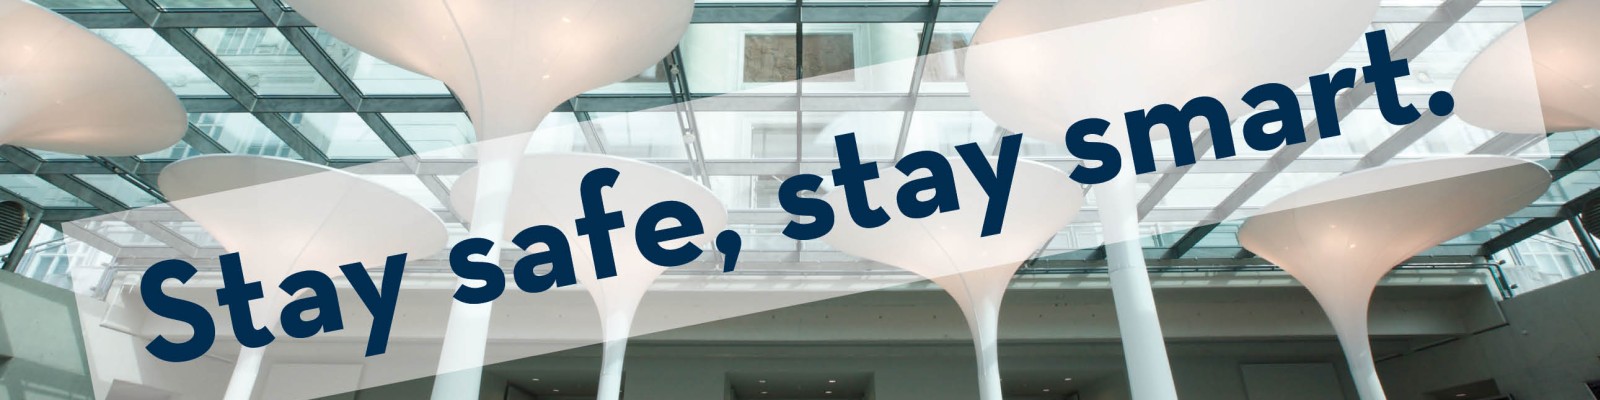 : Eingangshalle mit Slogan "Stay safe, stay smart."